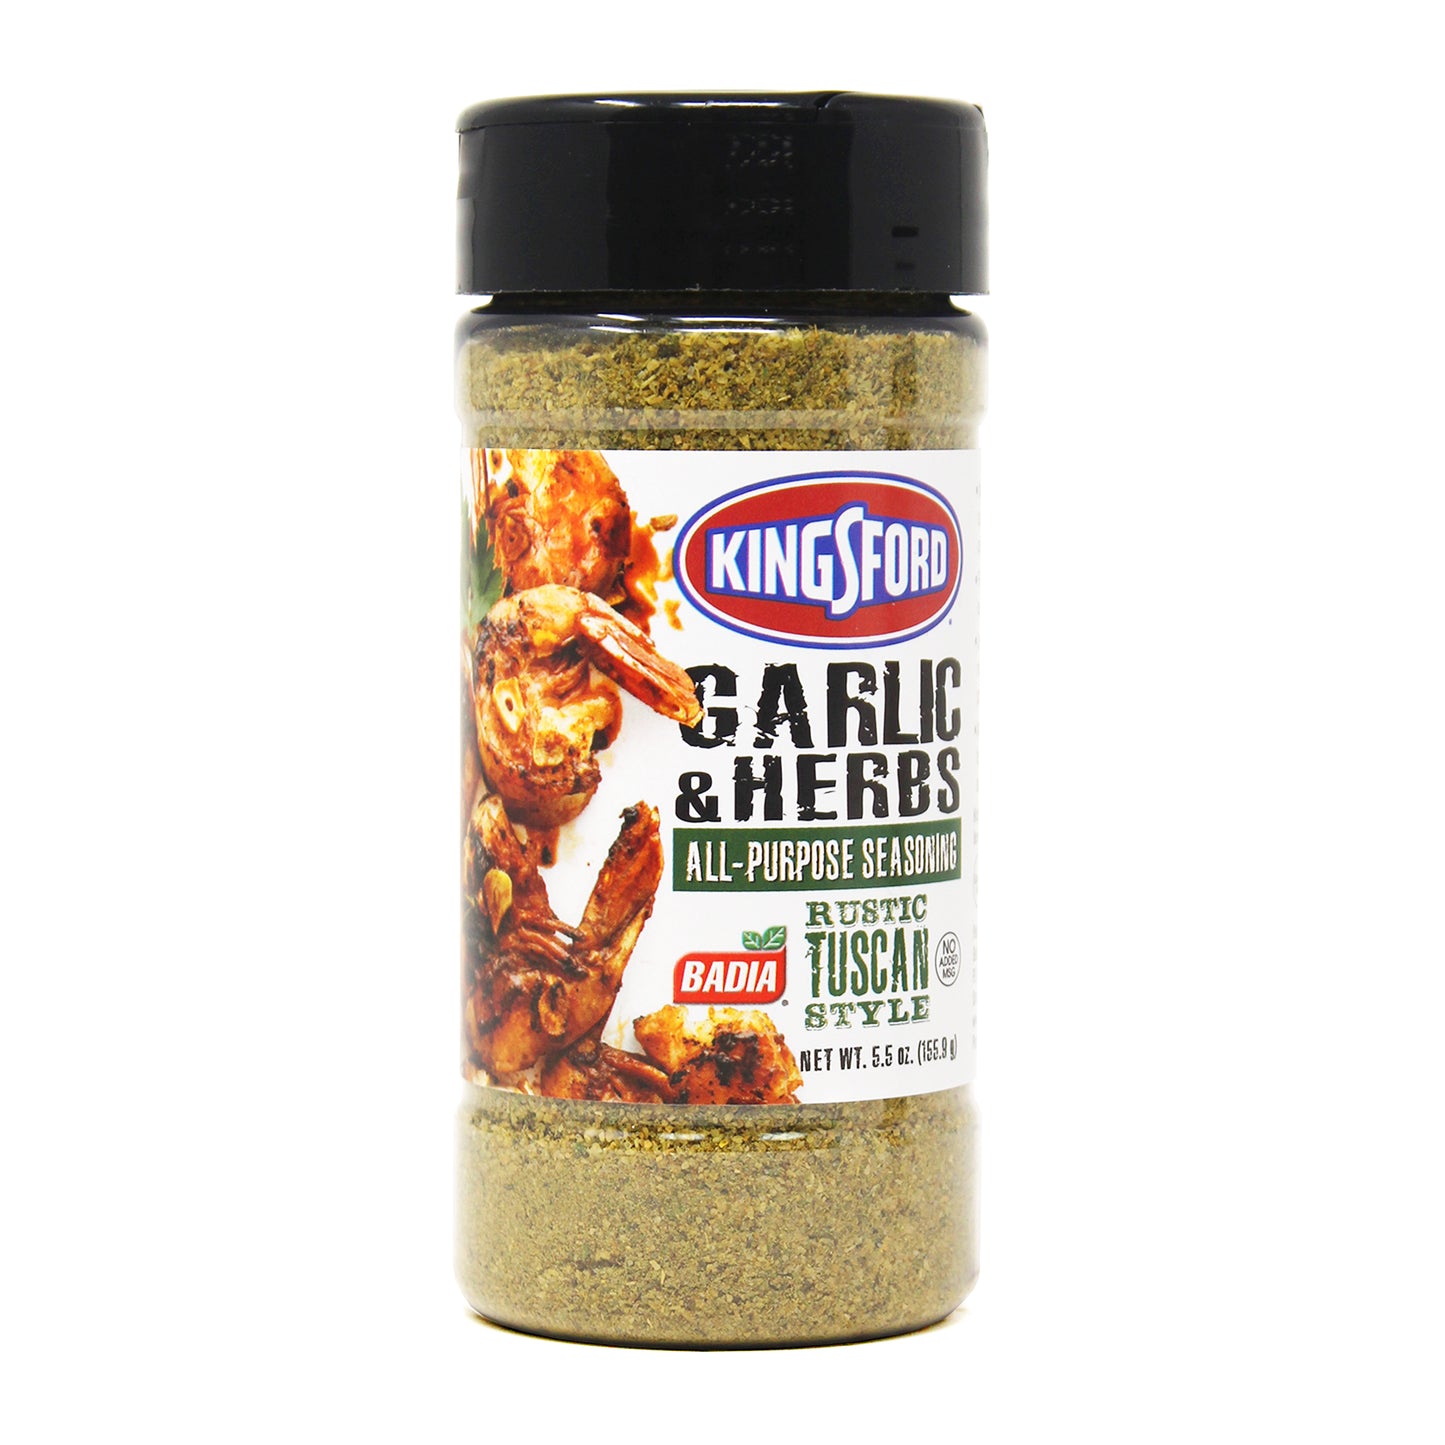 Kingsford Garlic & Herb 5.5oz 6004